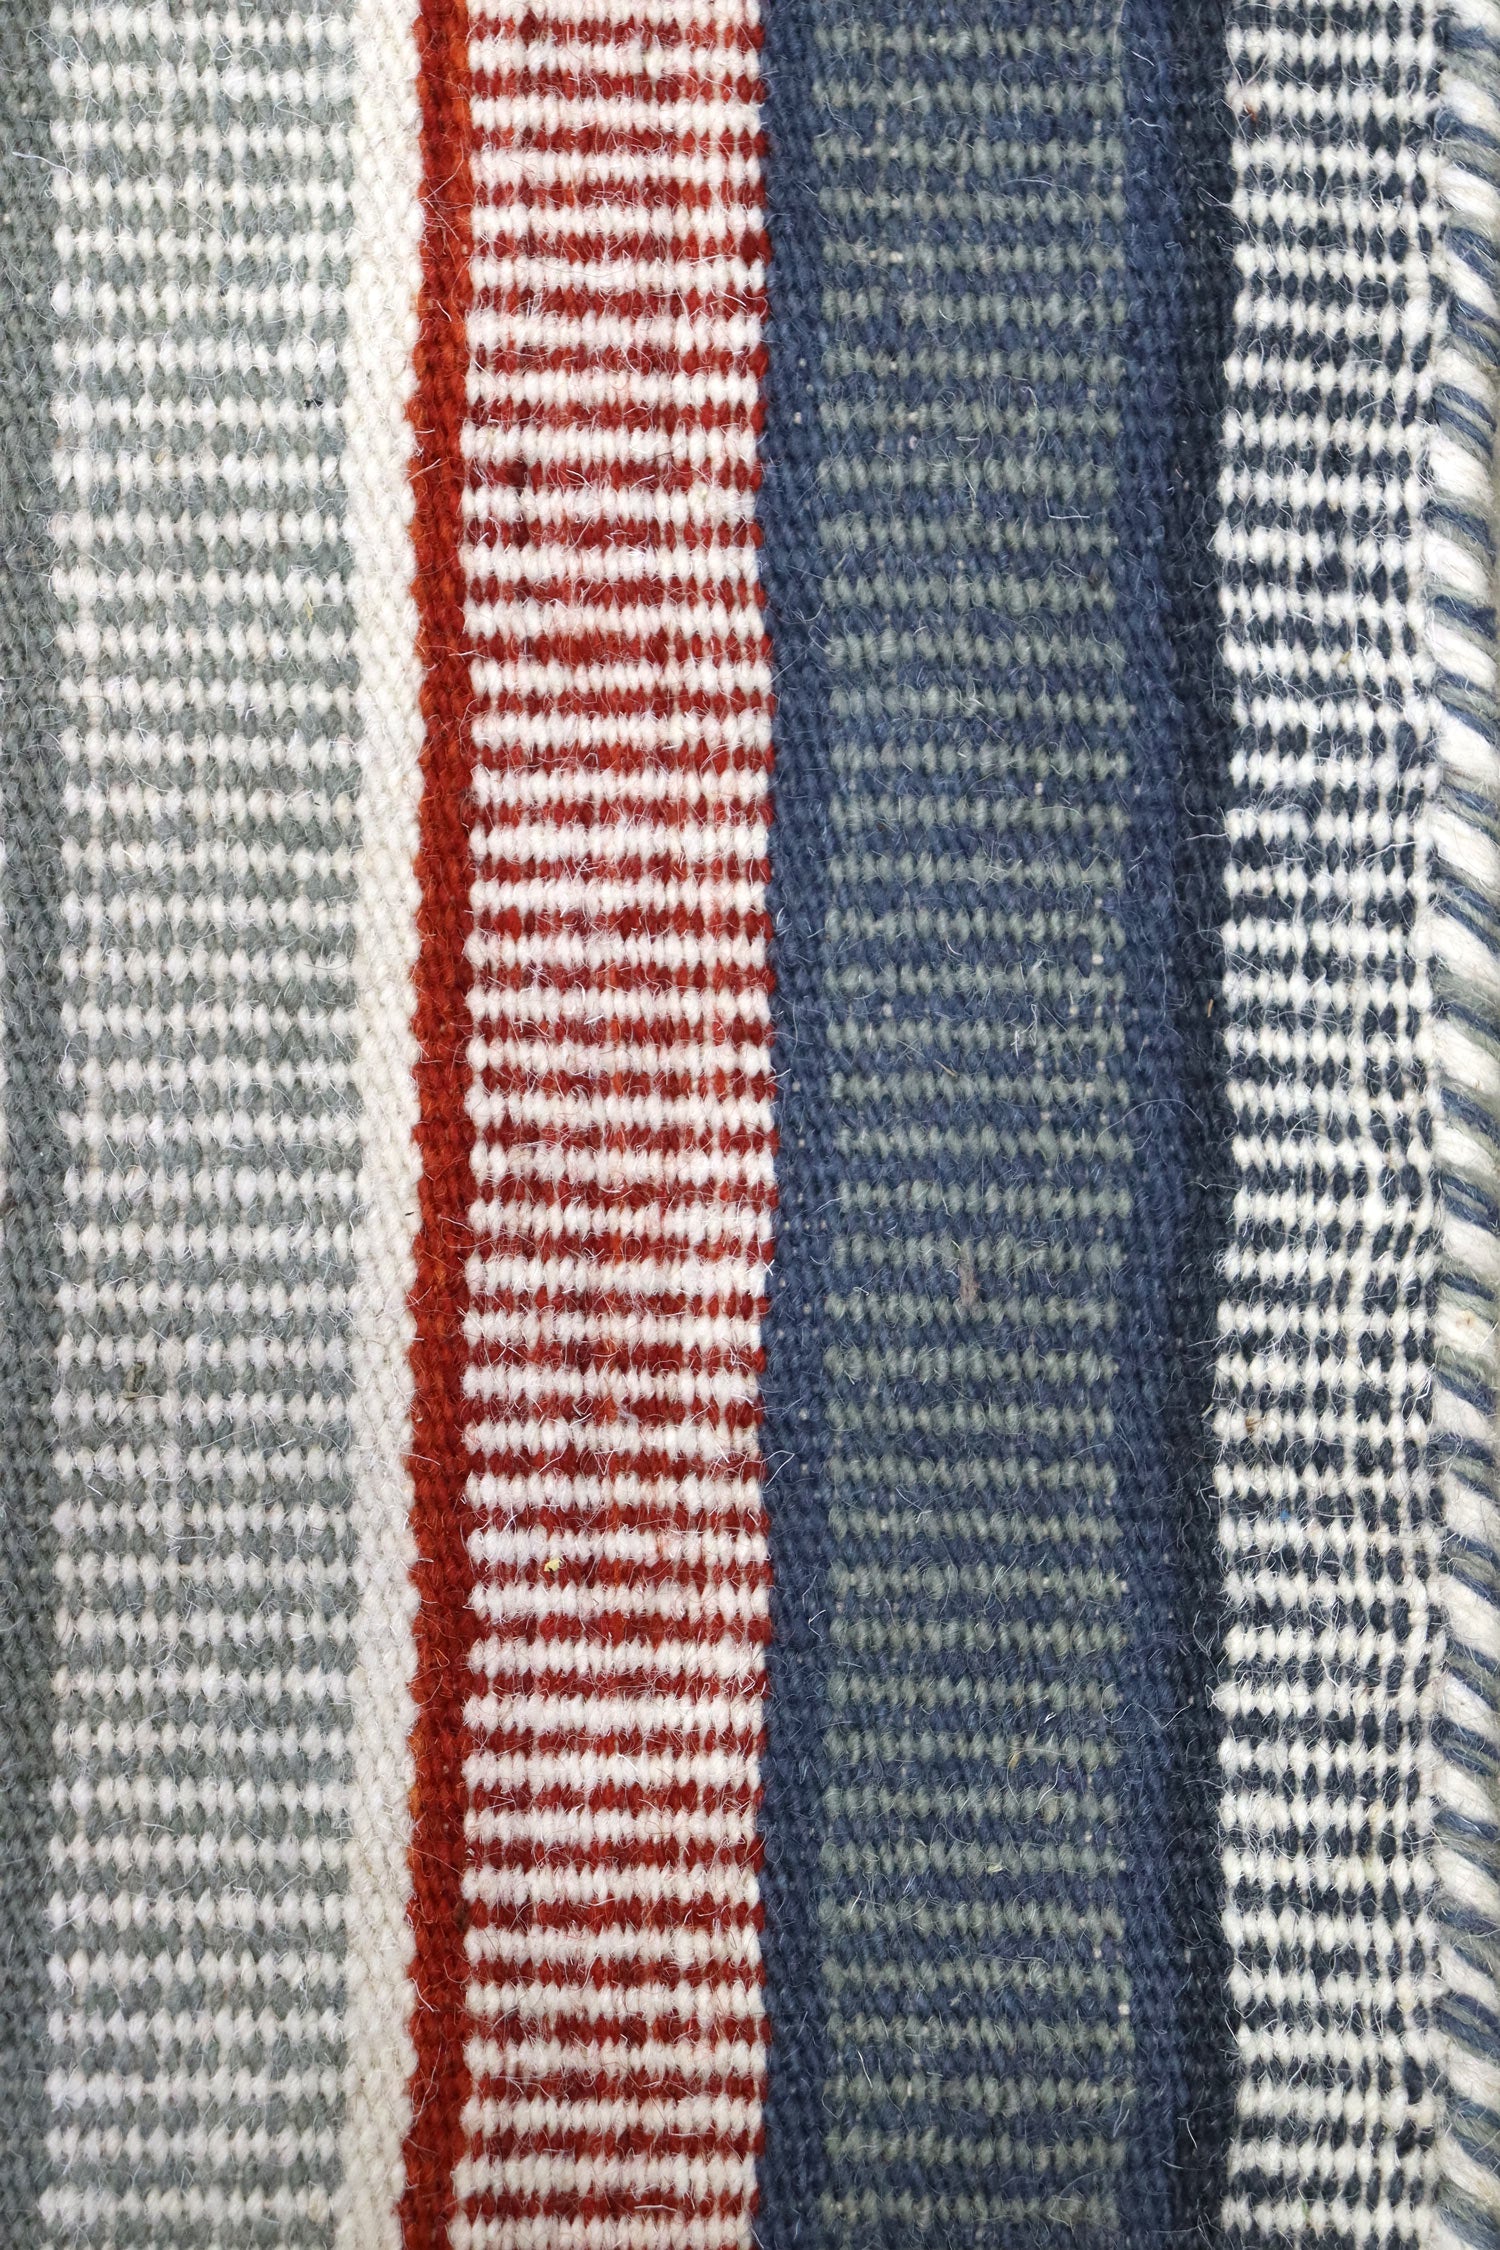 Stripes Handwoven Contemporary Rug, J66437